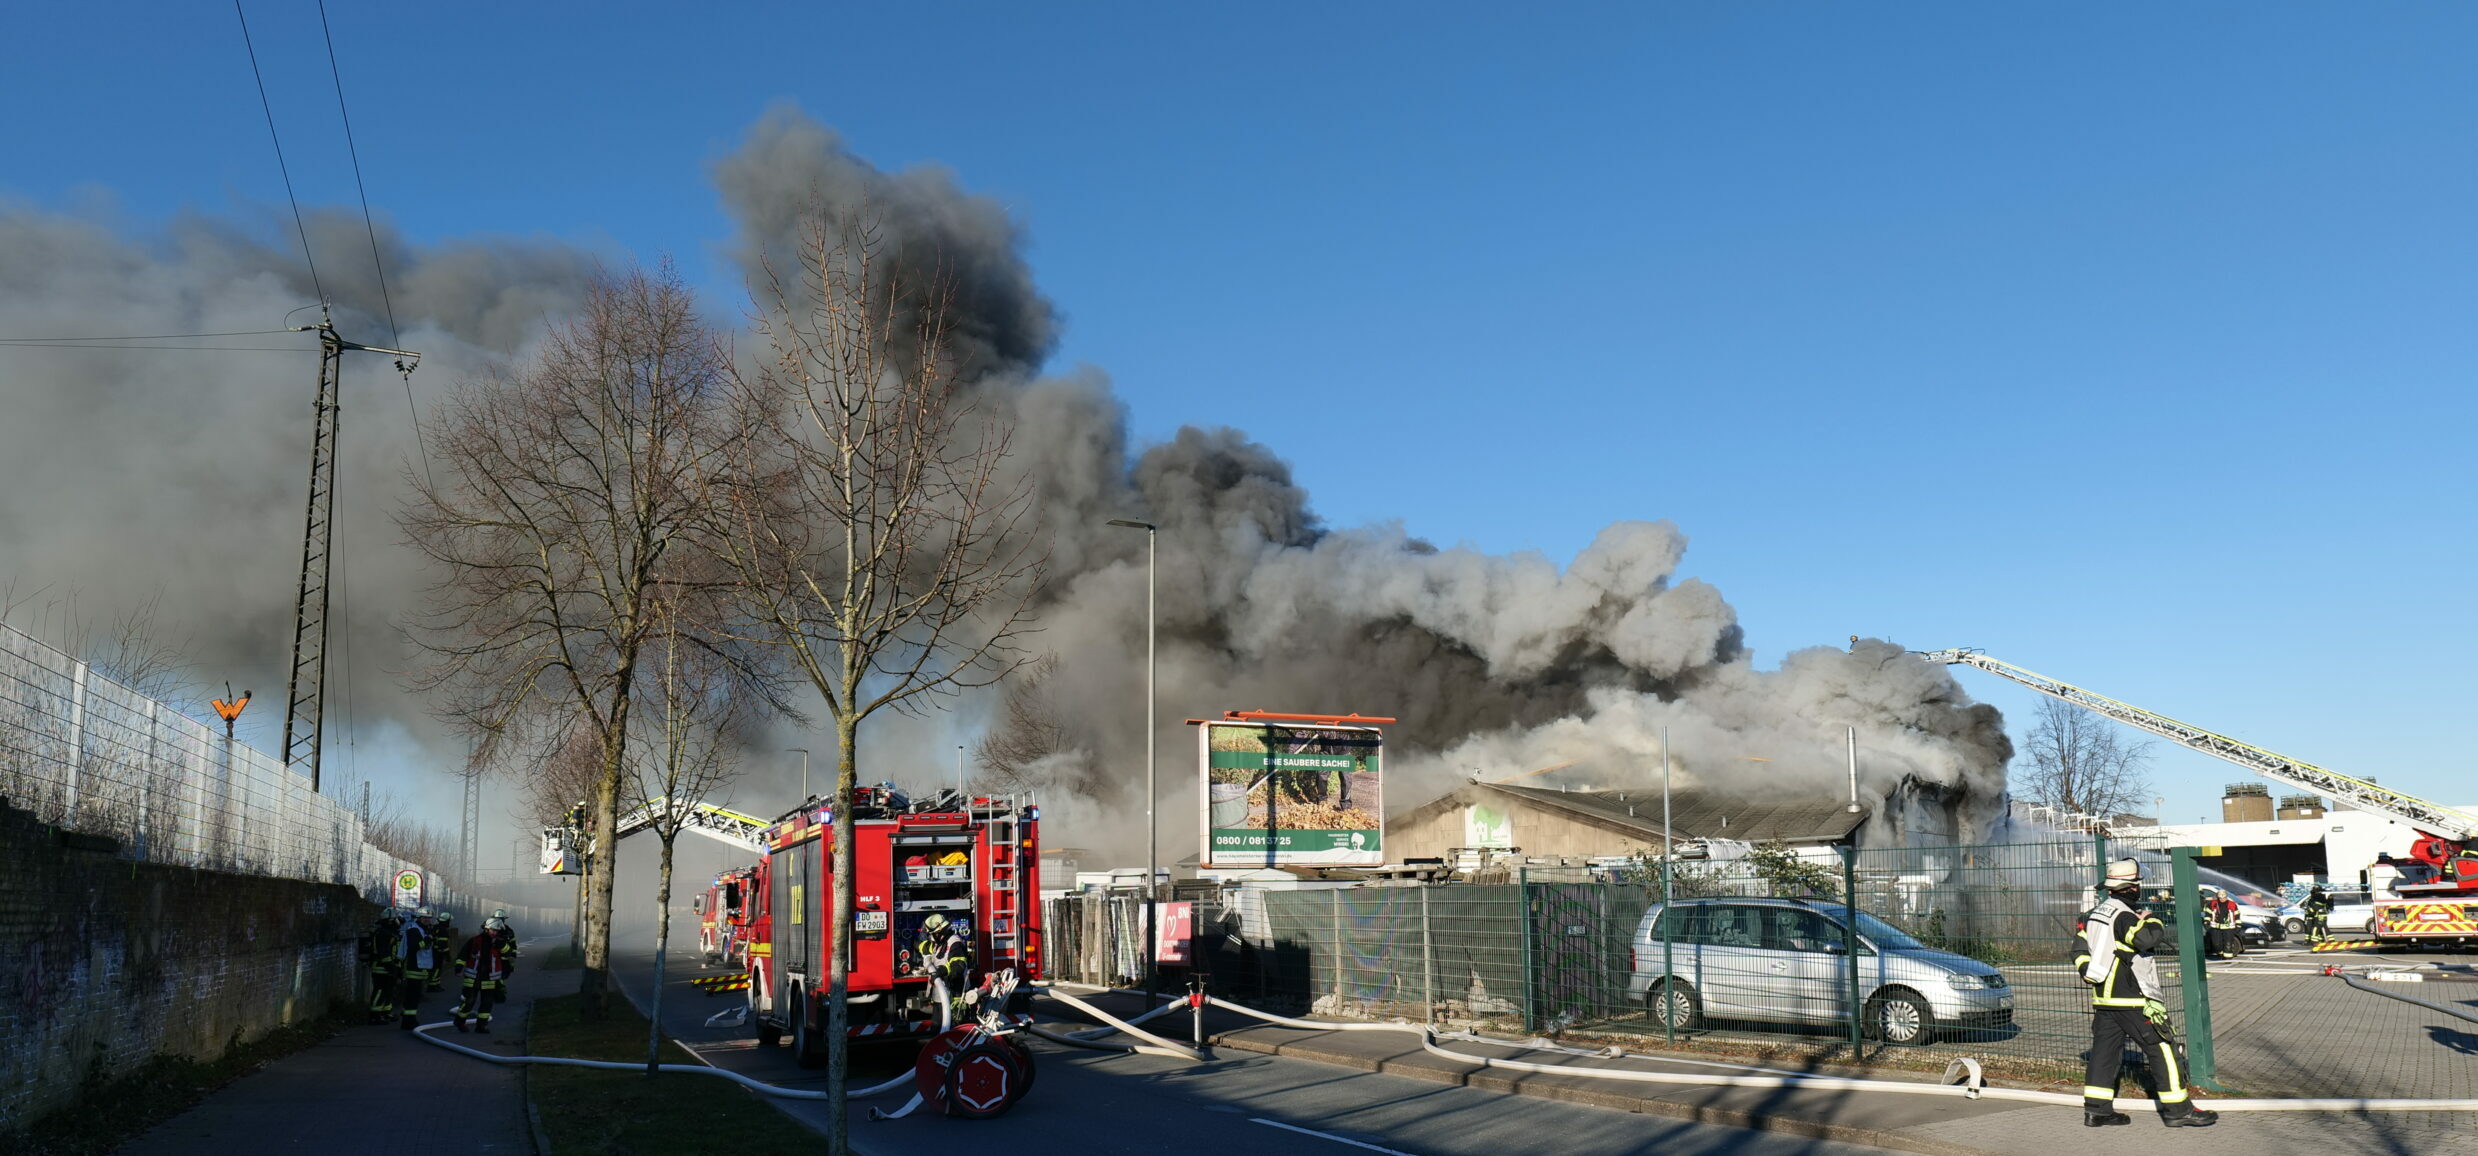 Riesige Rauchwolke zog nach Südwest – Lagerhalle mit Werkstatt nahe Dortmunder Hafen ausgebrannt